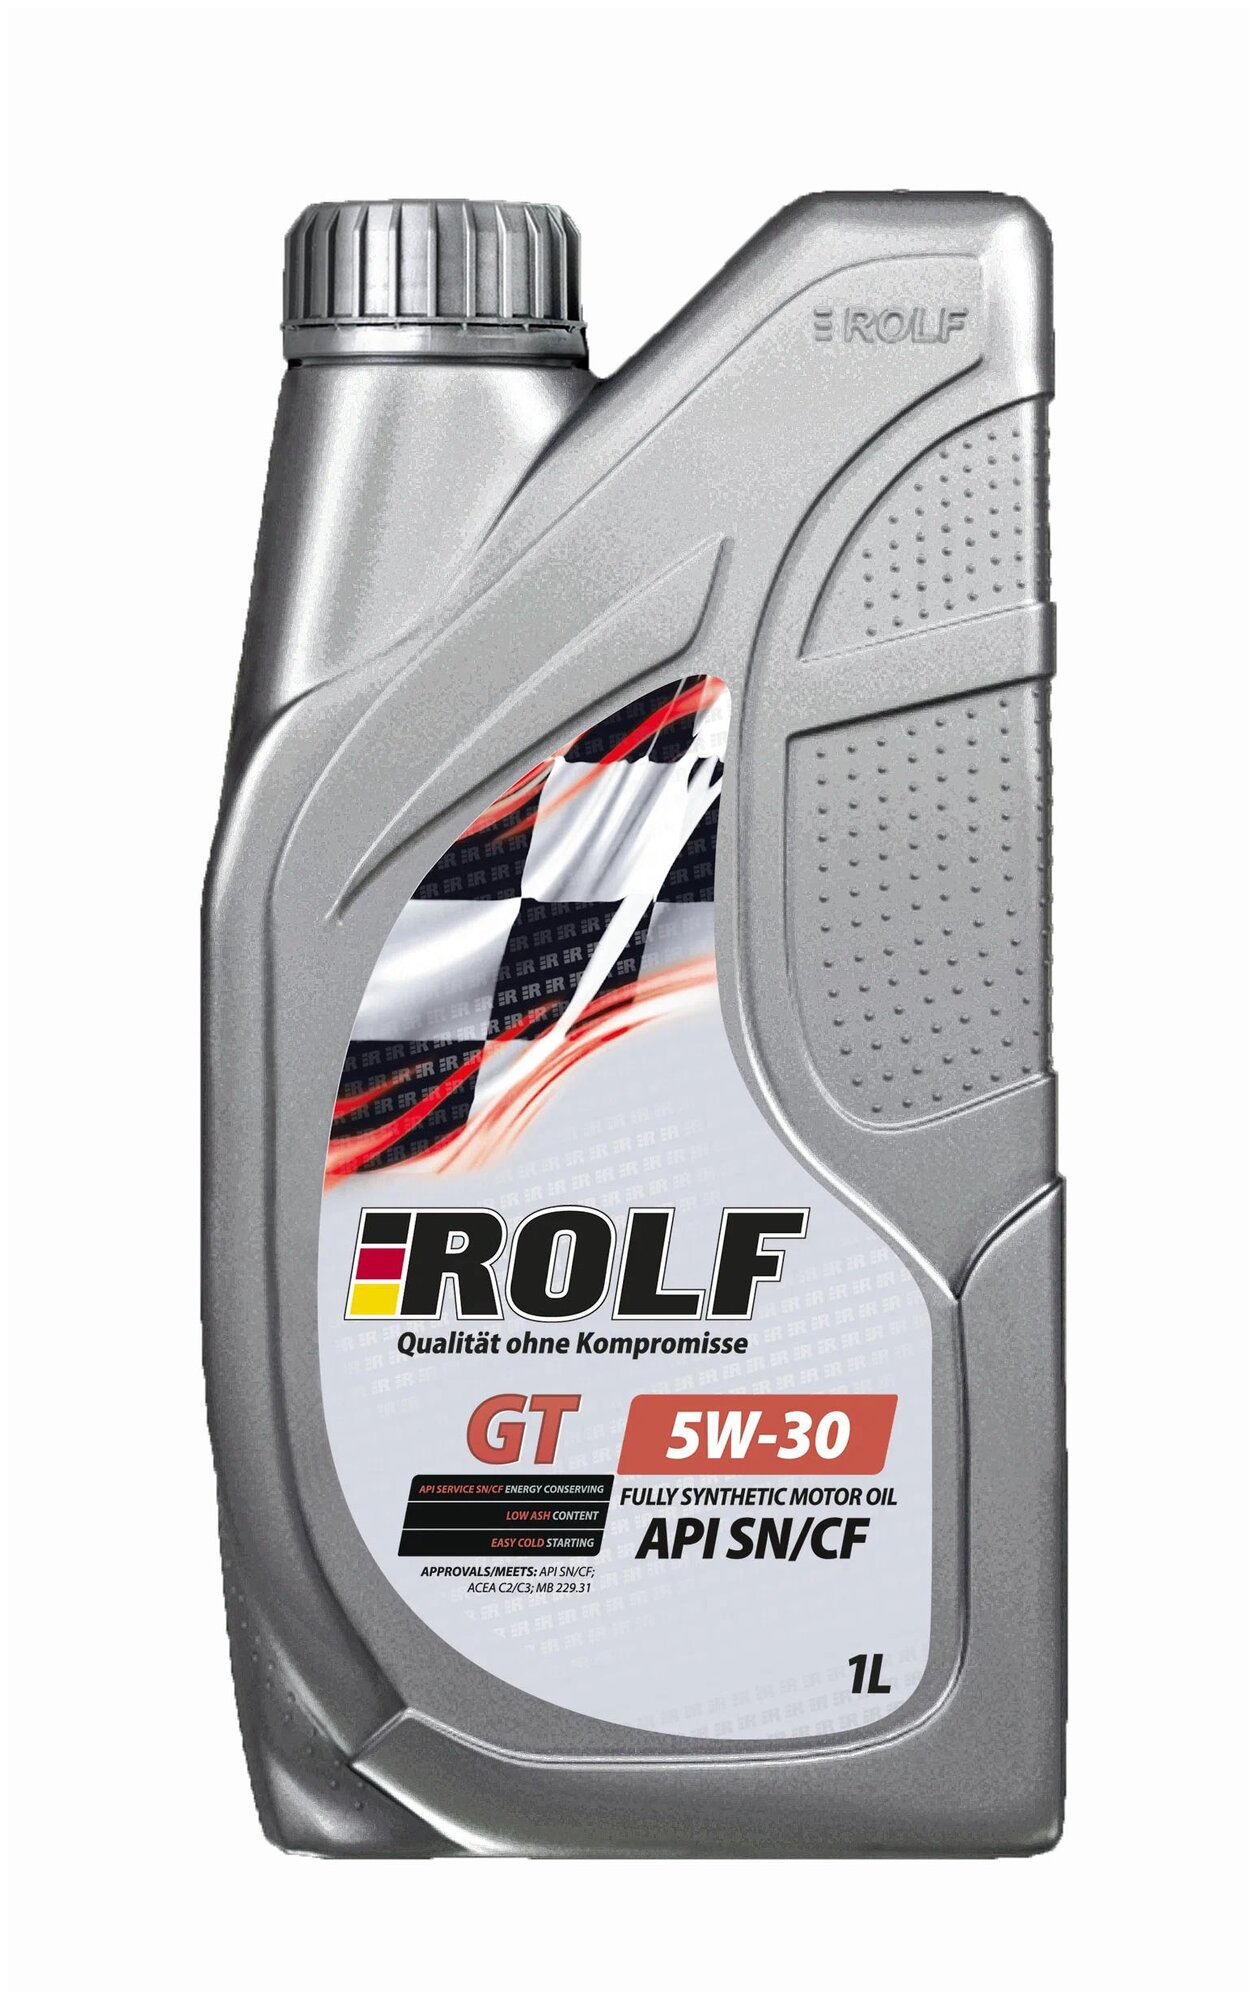   ROLF GT 5W30  1  322446